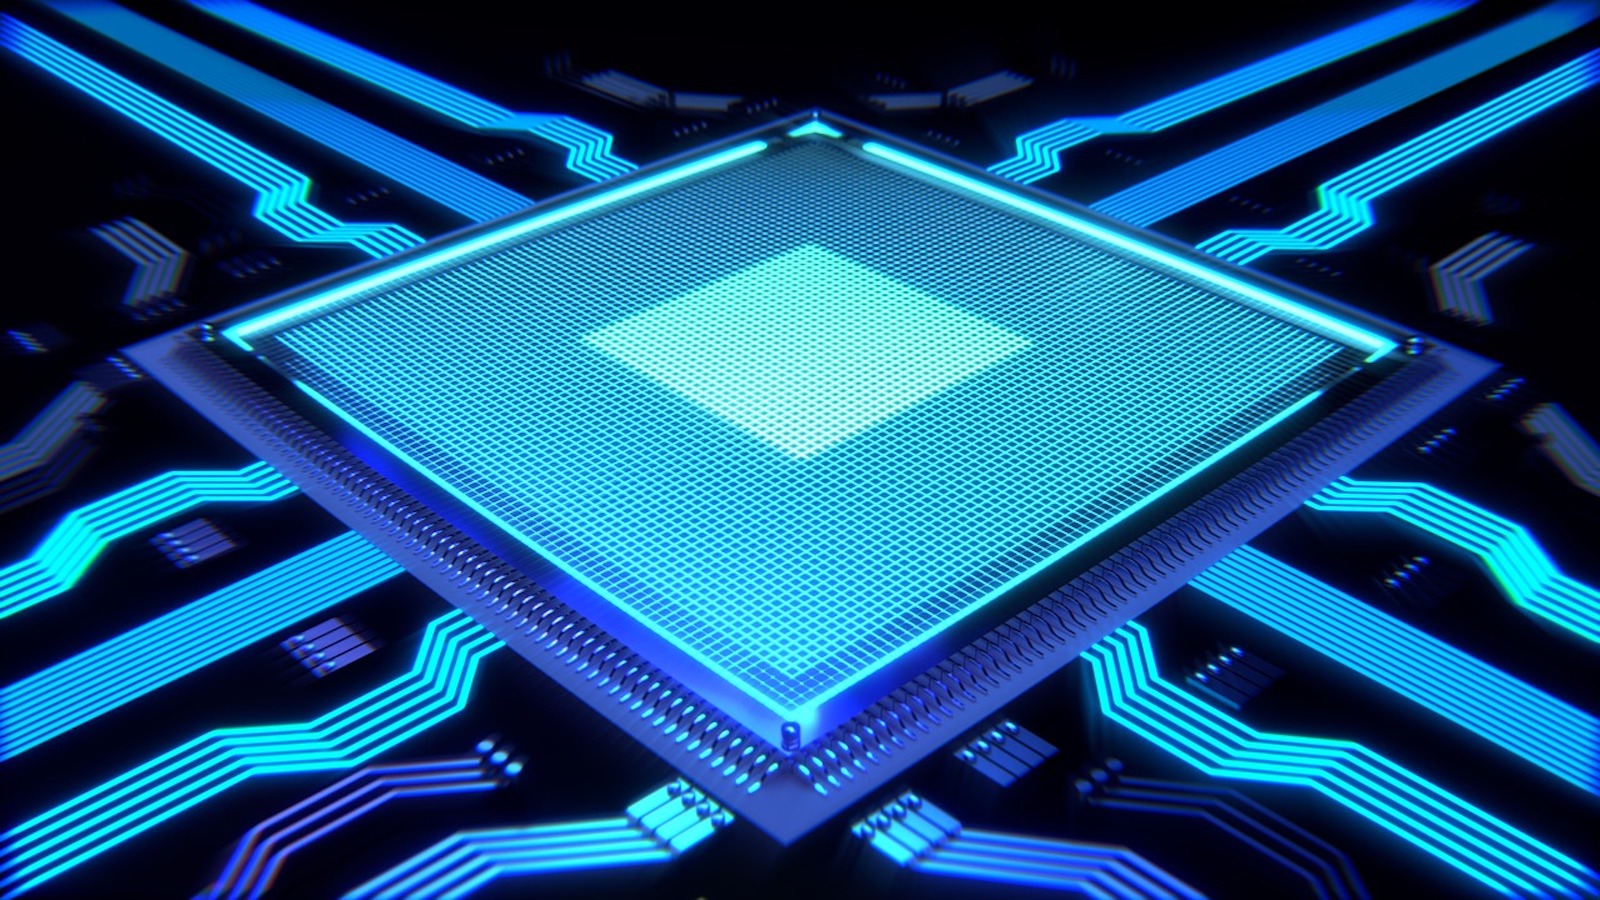 CPU comptuer processer close-up photo in blue